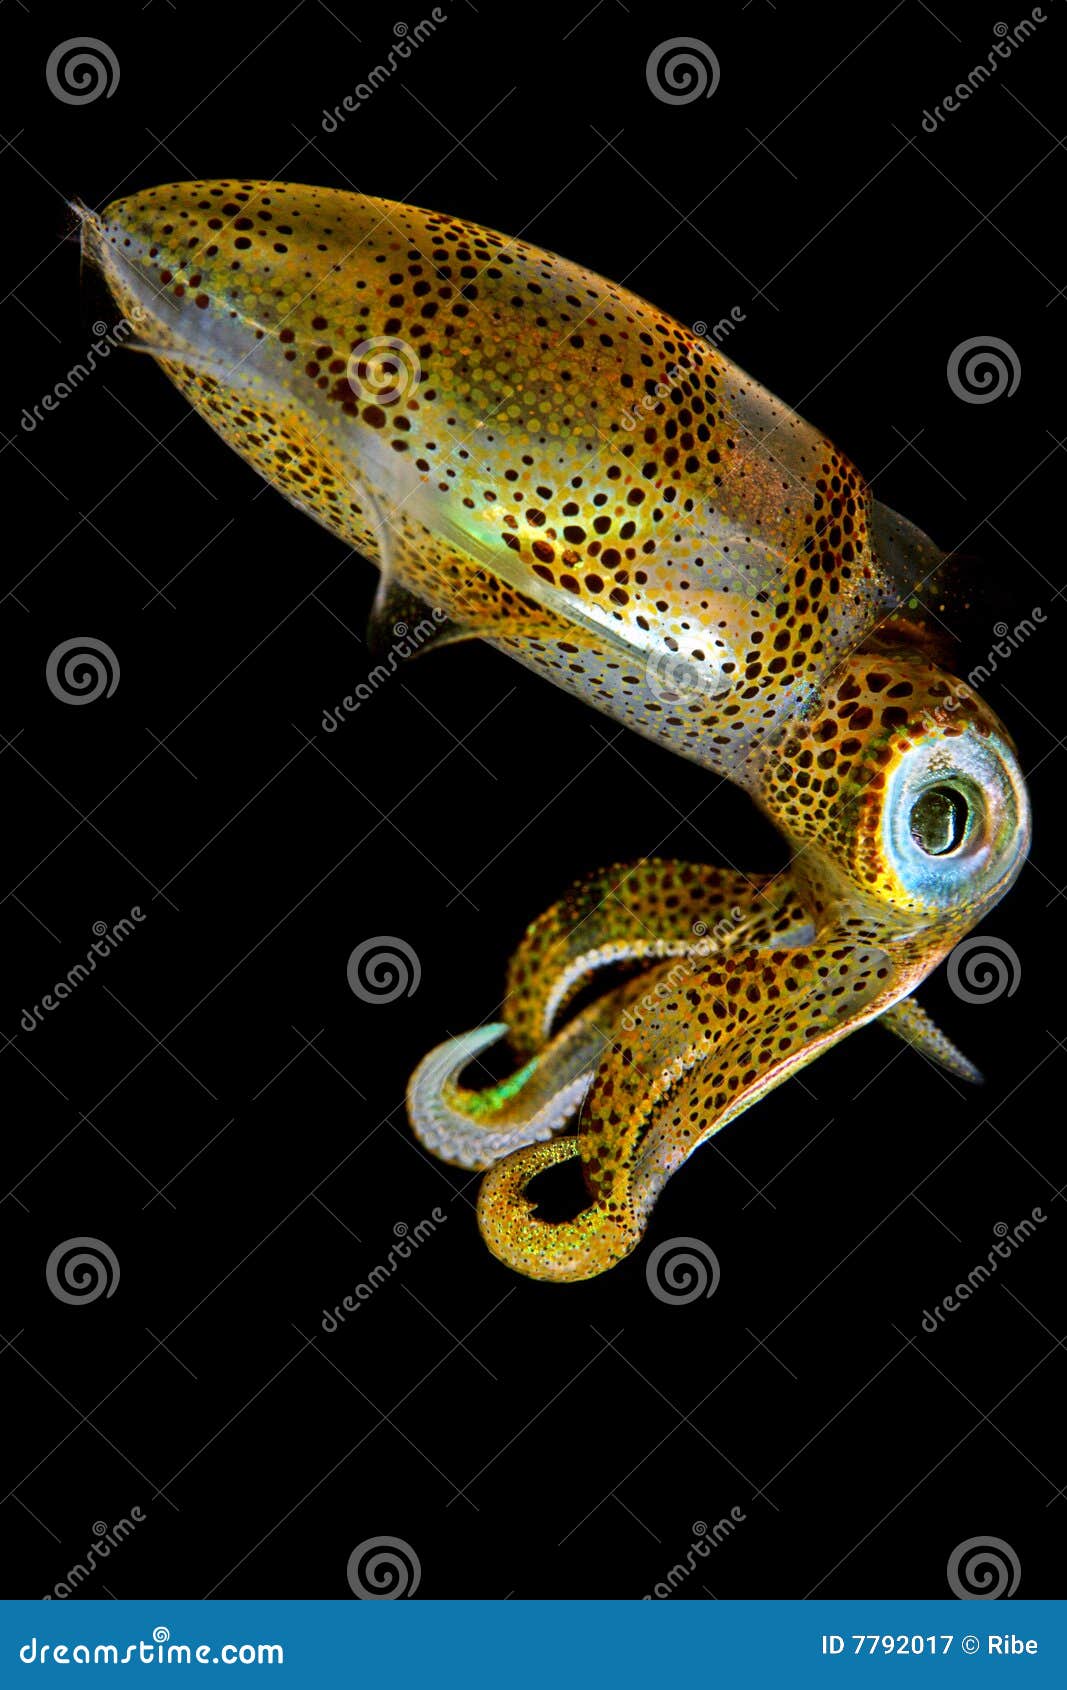 baby squid iii